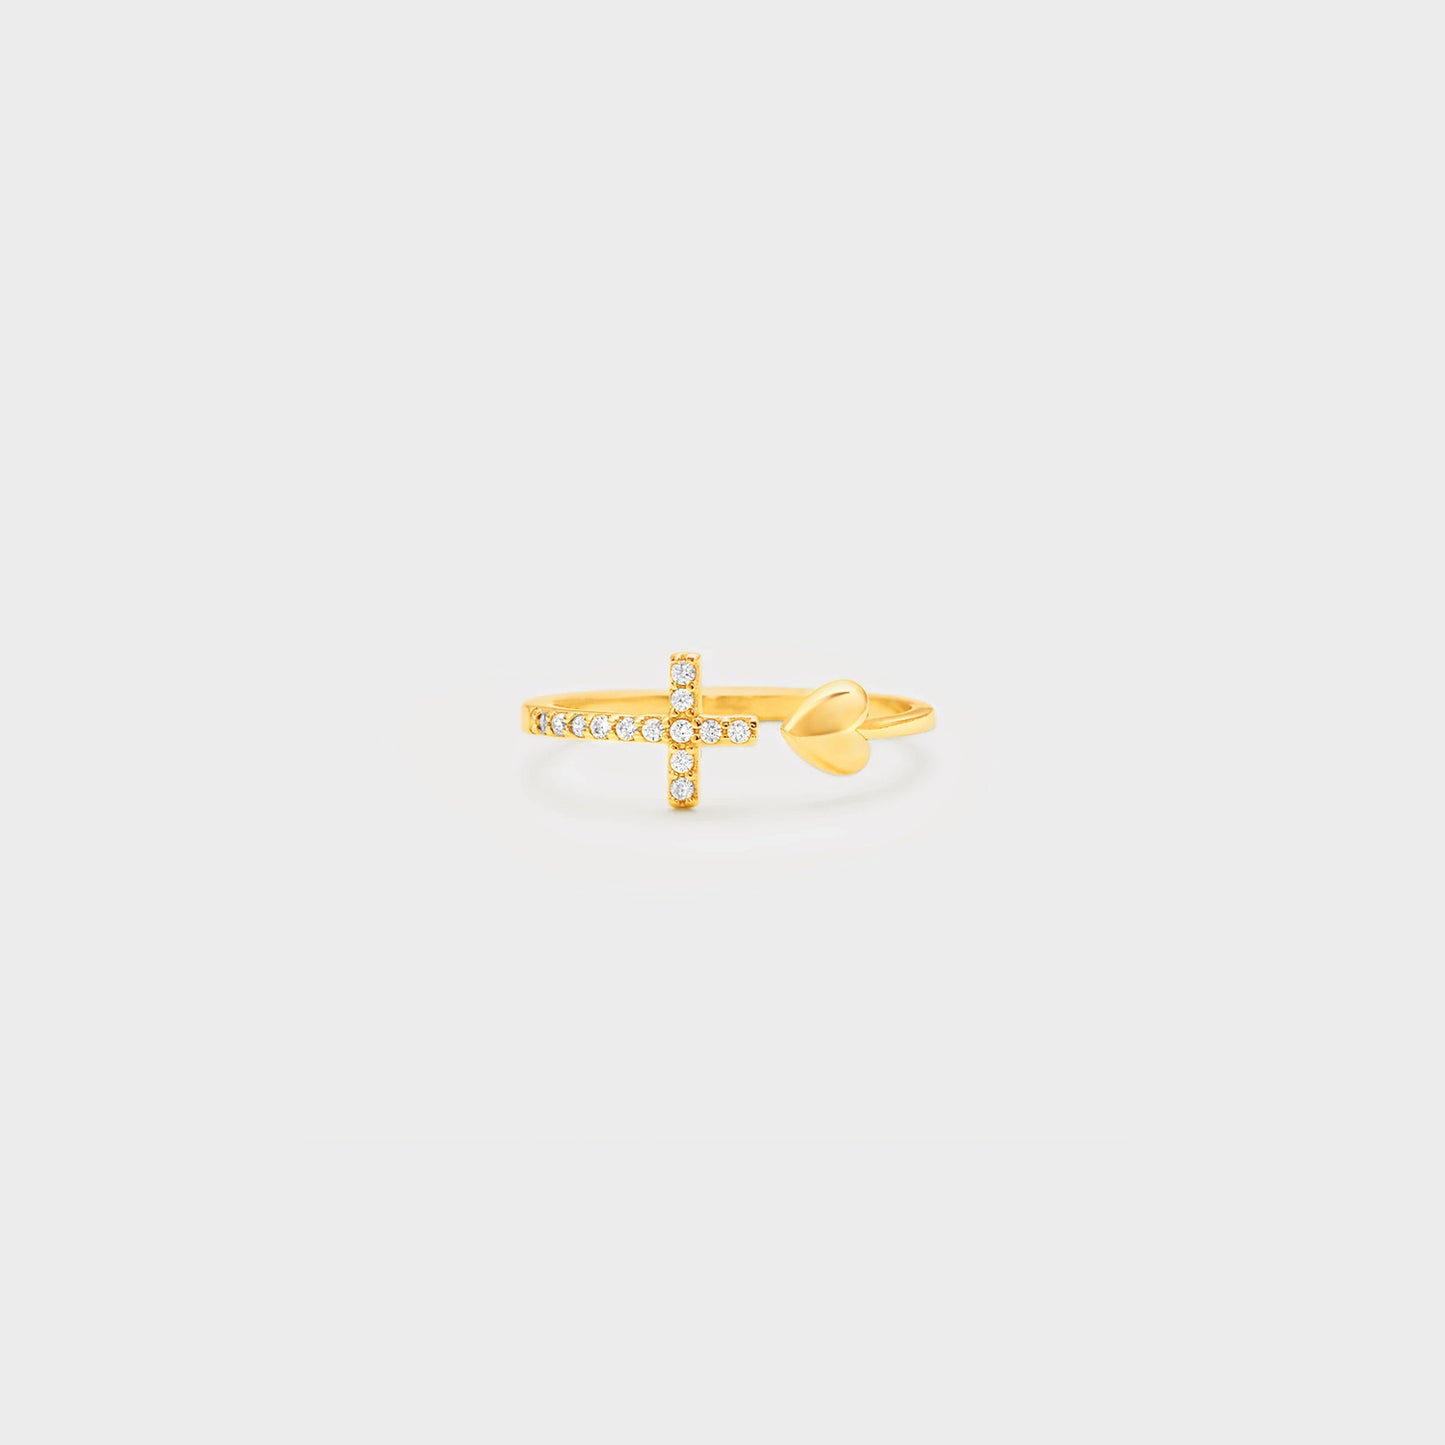 Herzförmiger offener Ring mit eingelegtem Zirkon und Kreuz